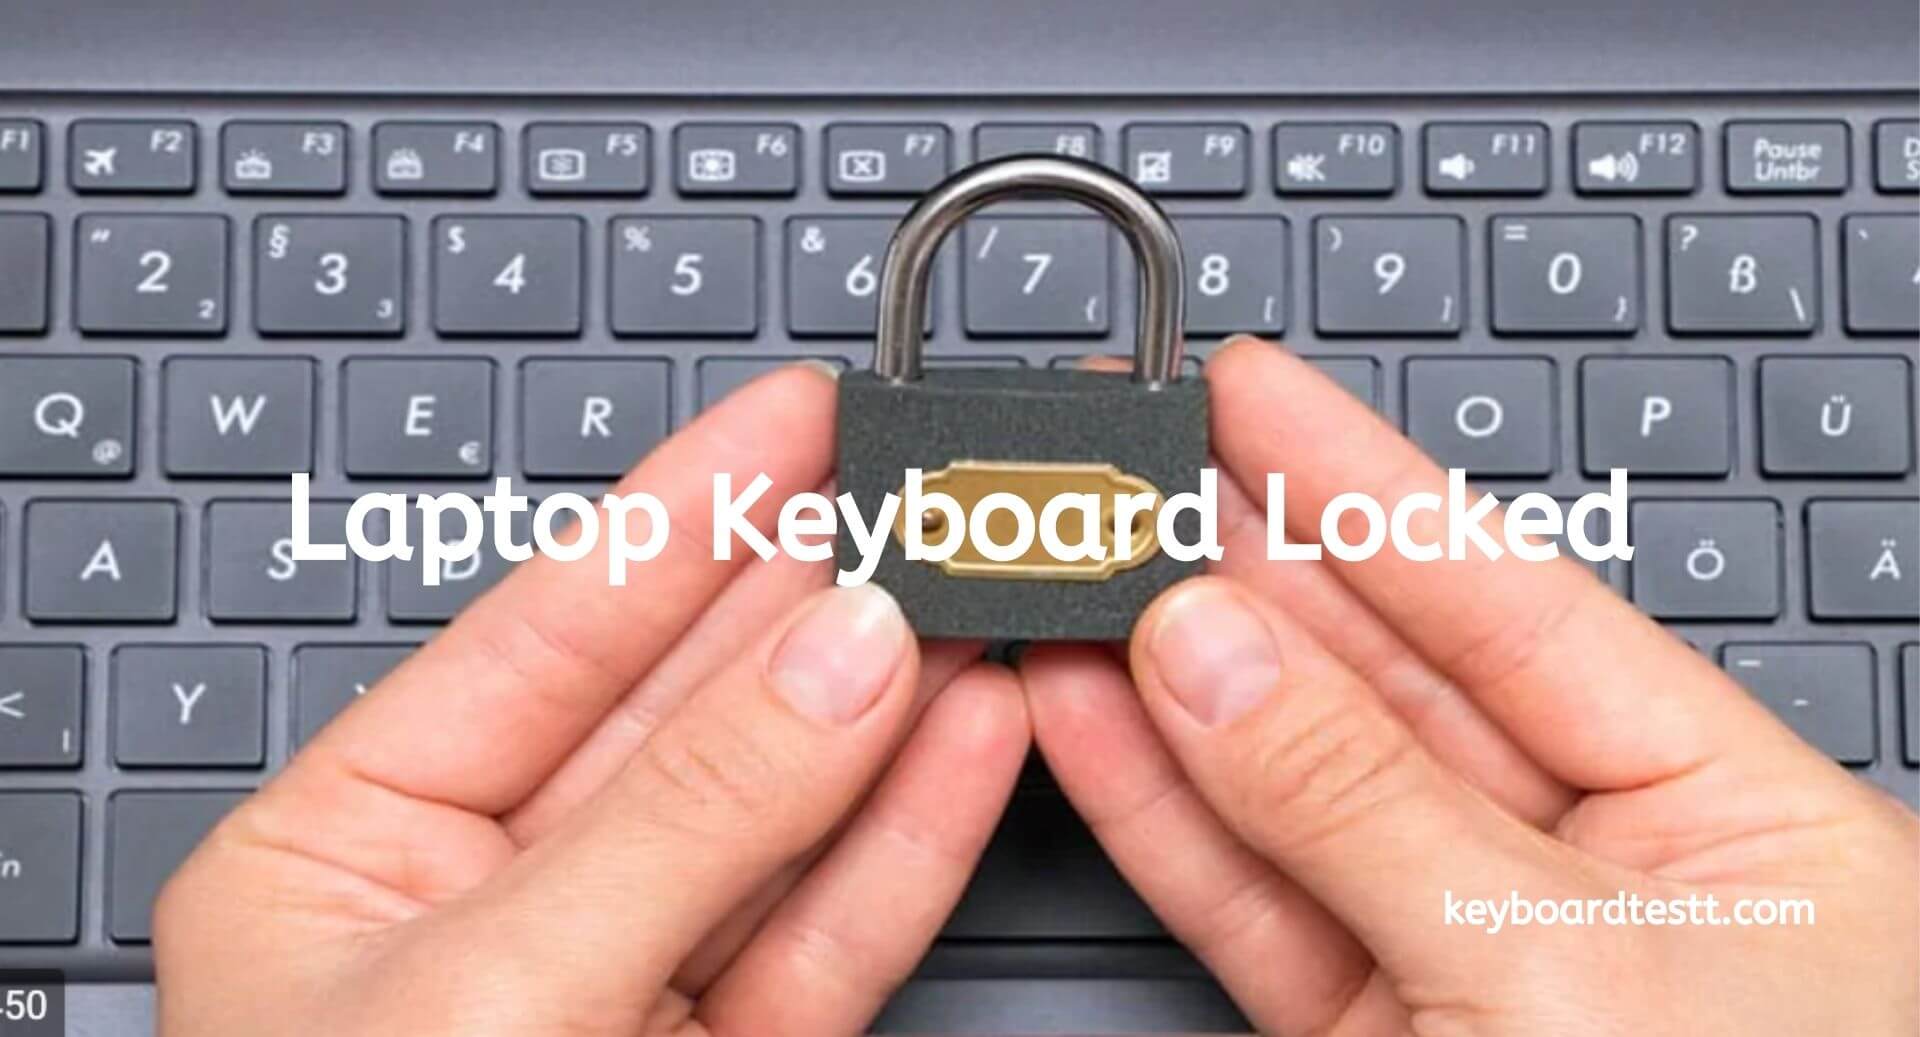 Laptop Keyboard Locked - Keyboard Test Online